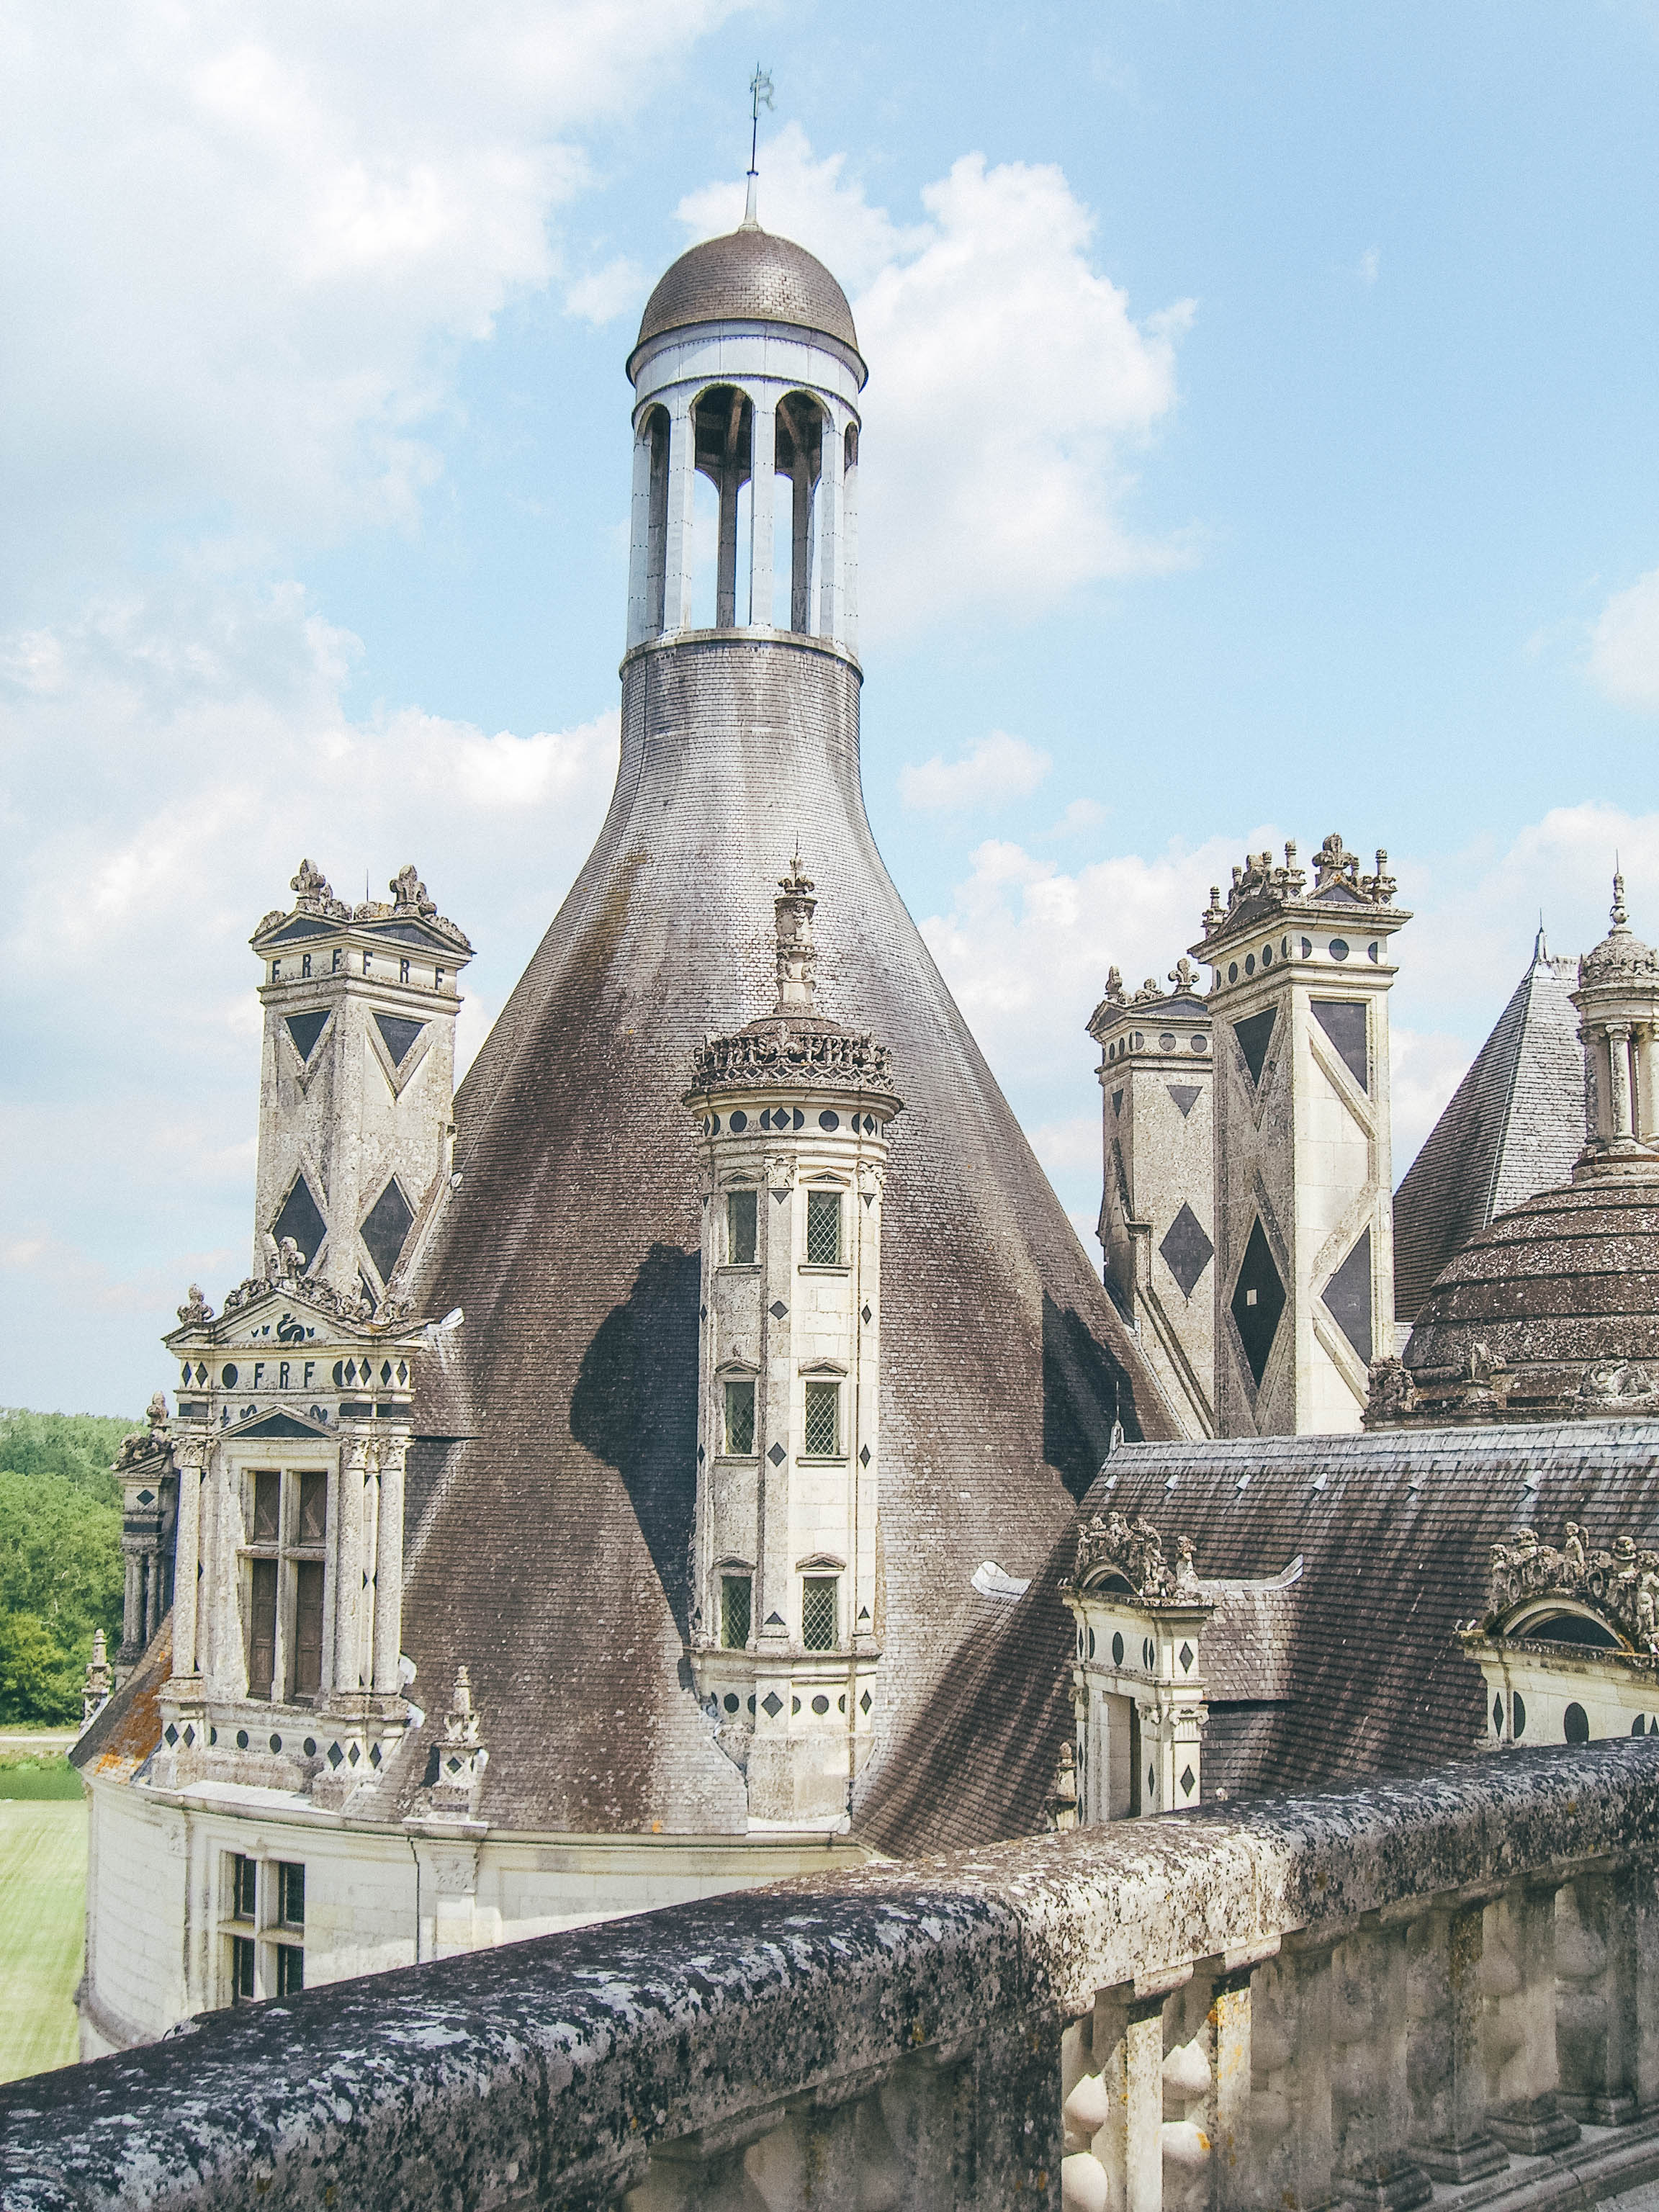 Roof Details of the Castle - Chateau de Chambord - Loire Valley - France